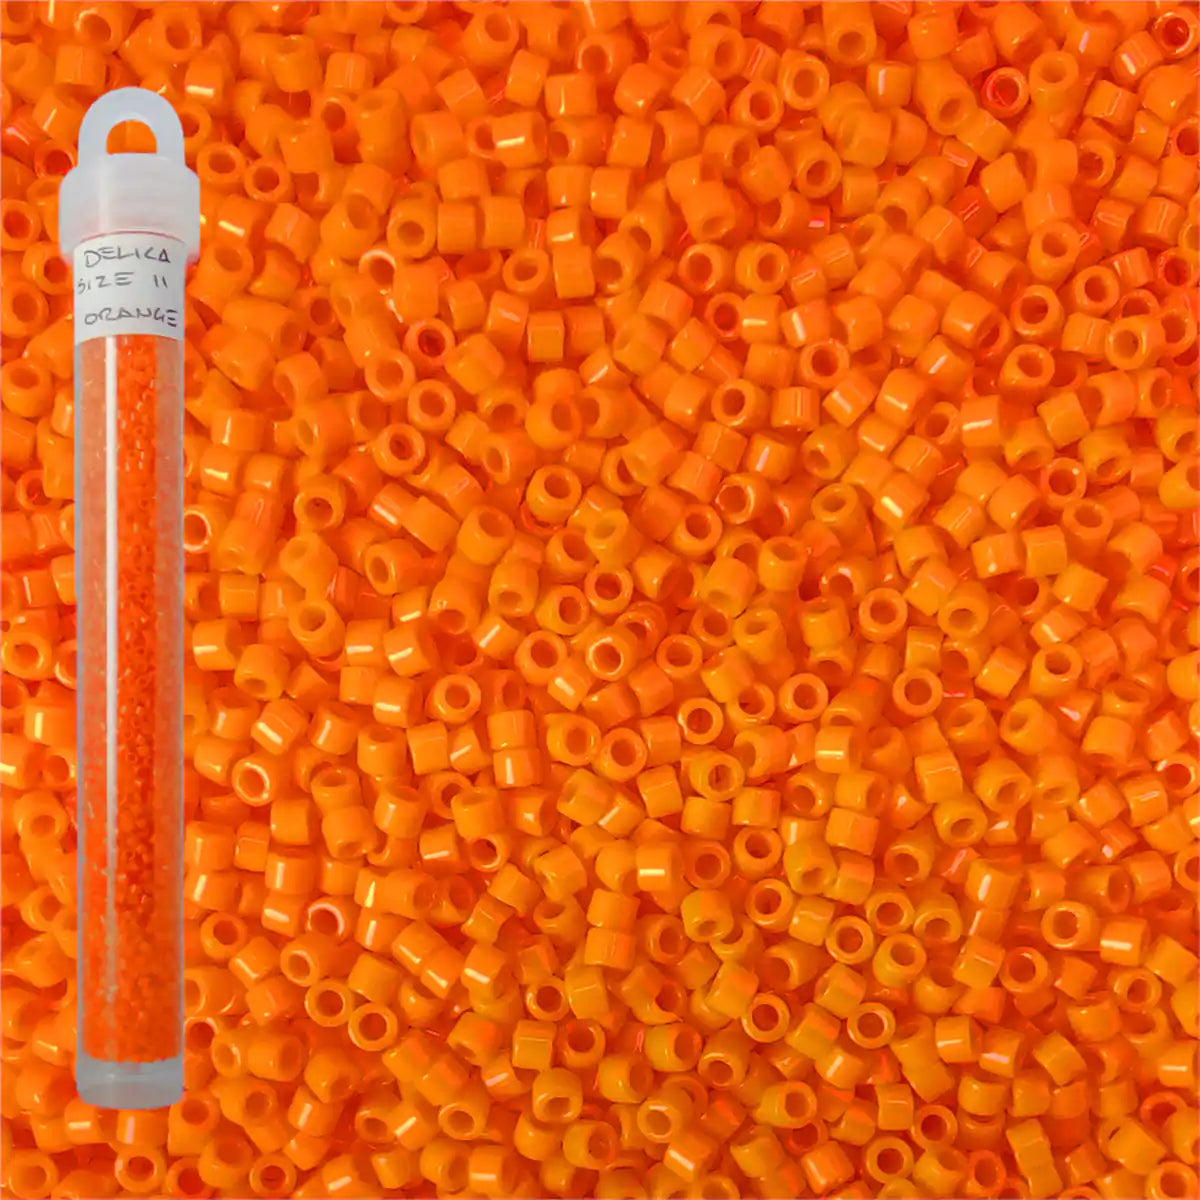 Delica beads orange size 11